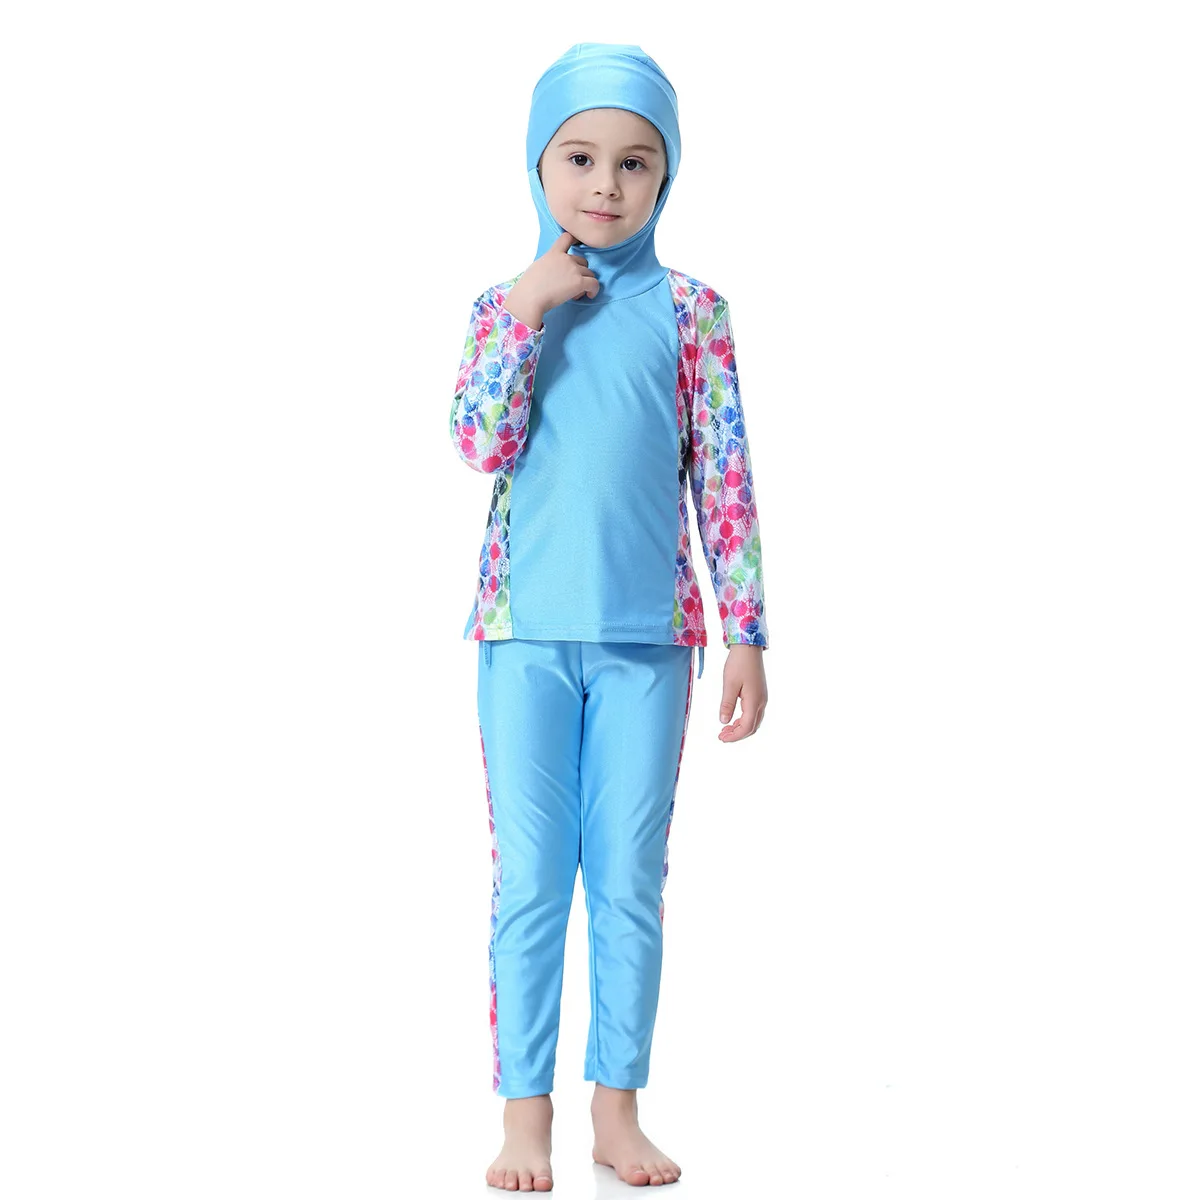 Мусульманских детей Плавание костюмы для девочек-мусульманок Плавание одежда Одна деталь Плавание костюм для младенцев купальный костюм для маленьких девочек, исламическое плавание костюмы дети Буркини